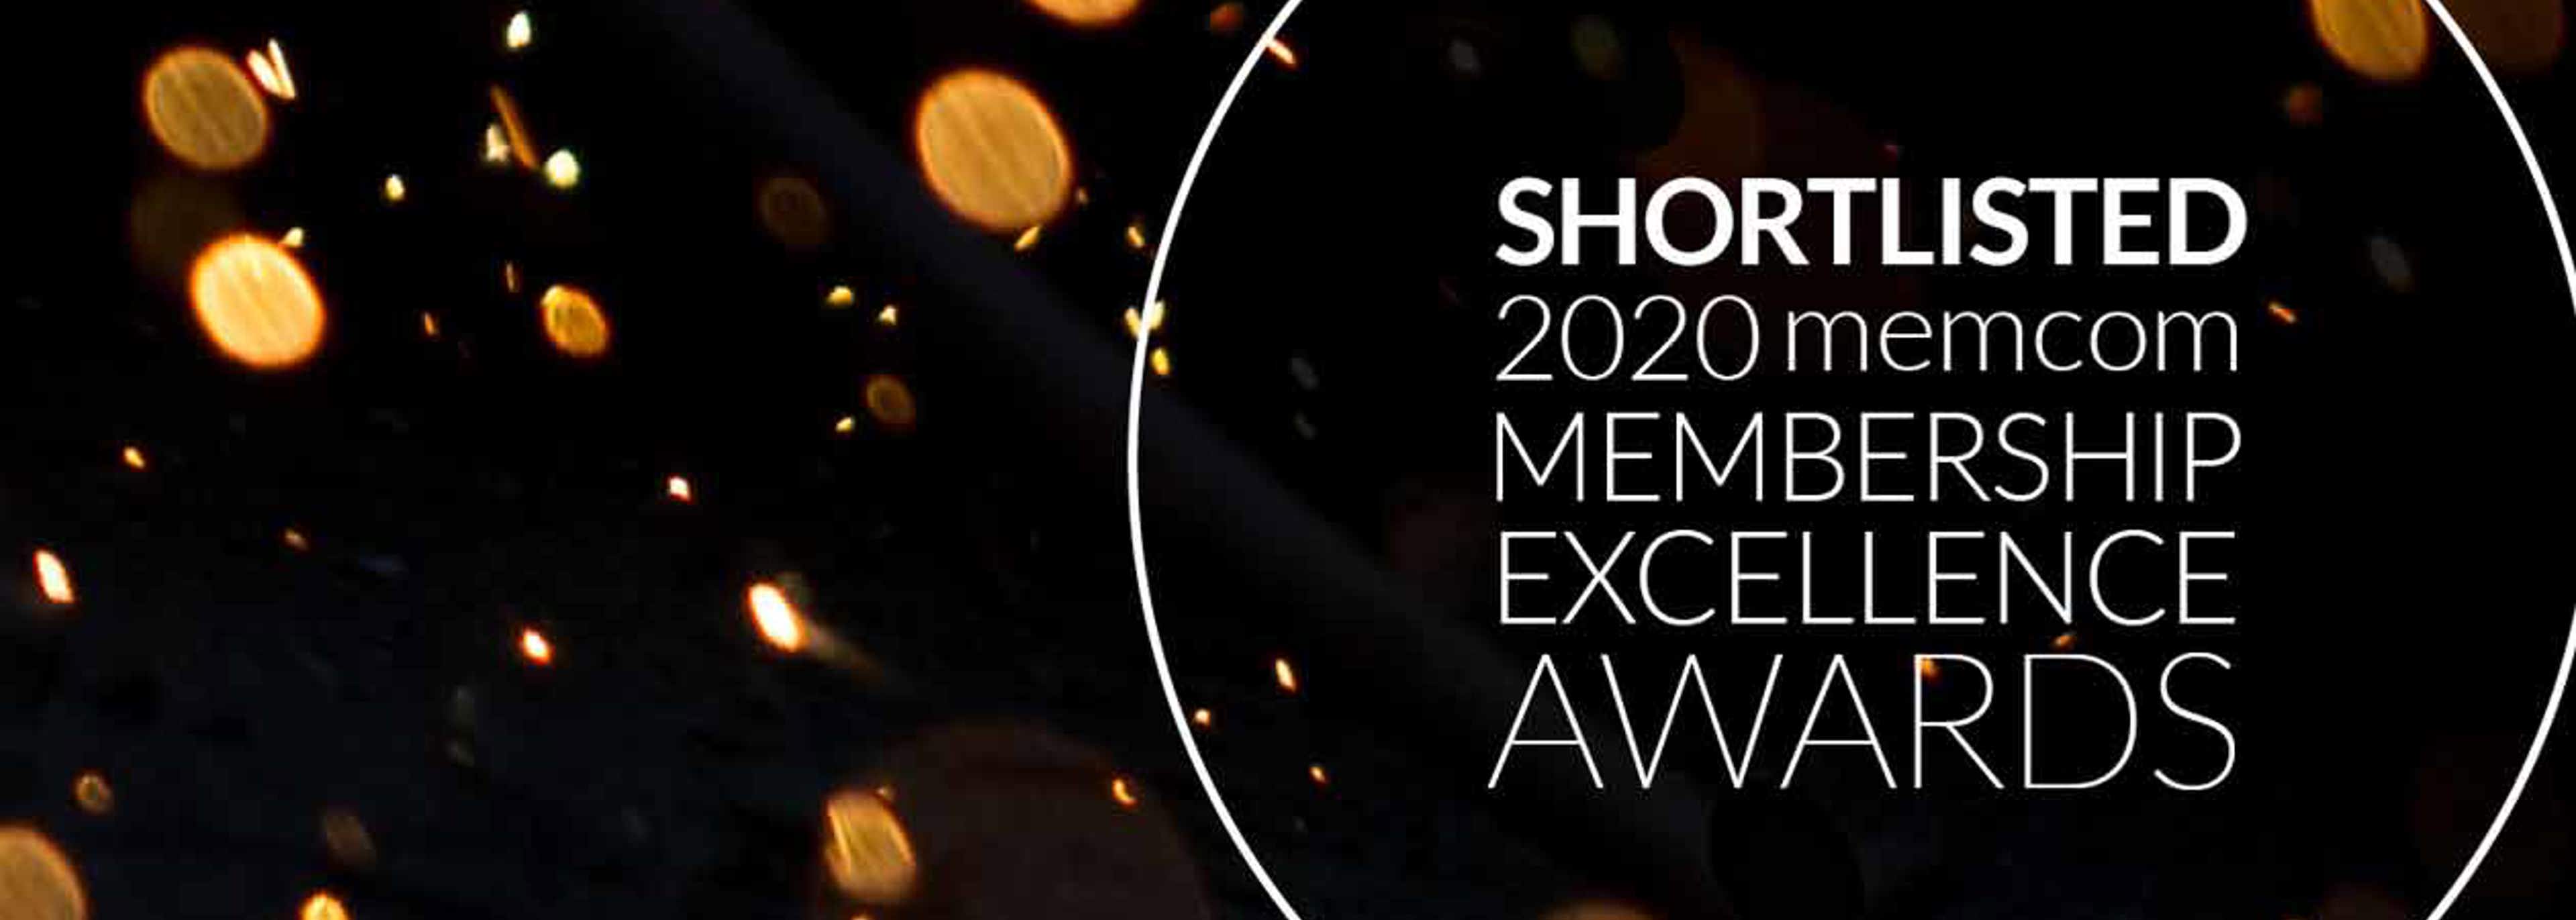 CIEH shortlisted at 2020 memcom awards